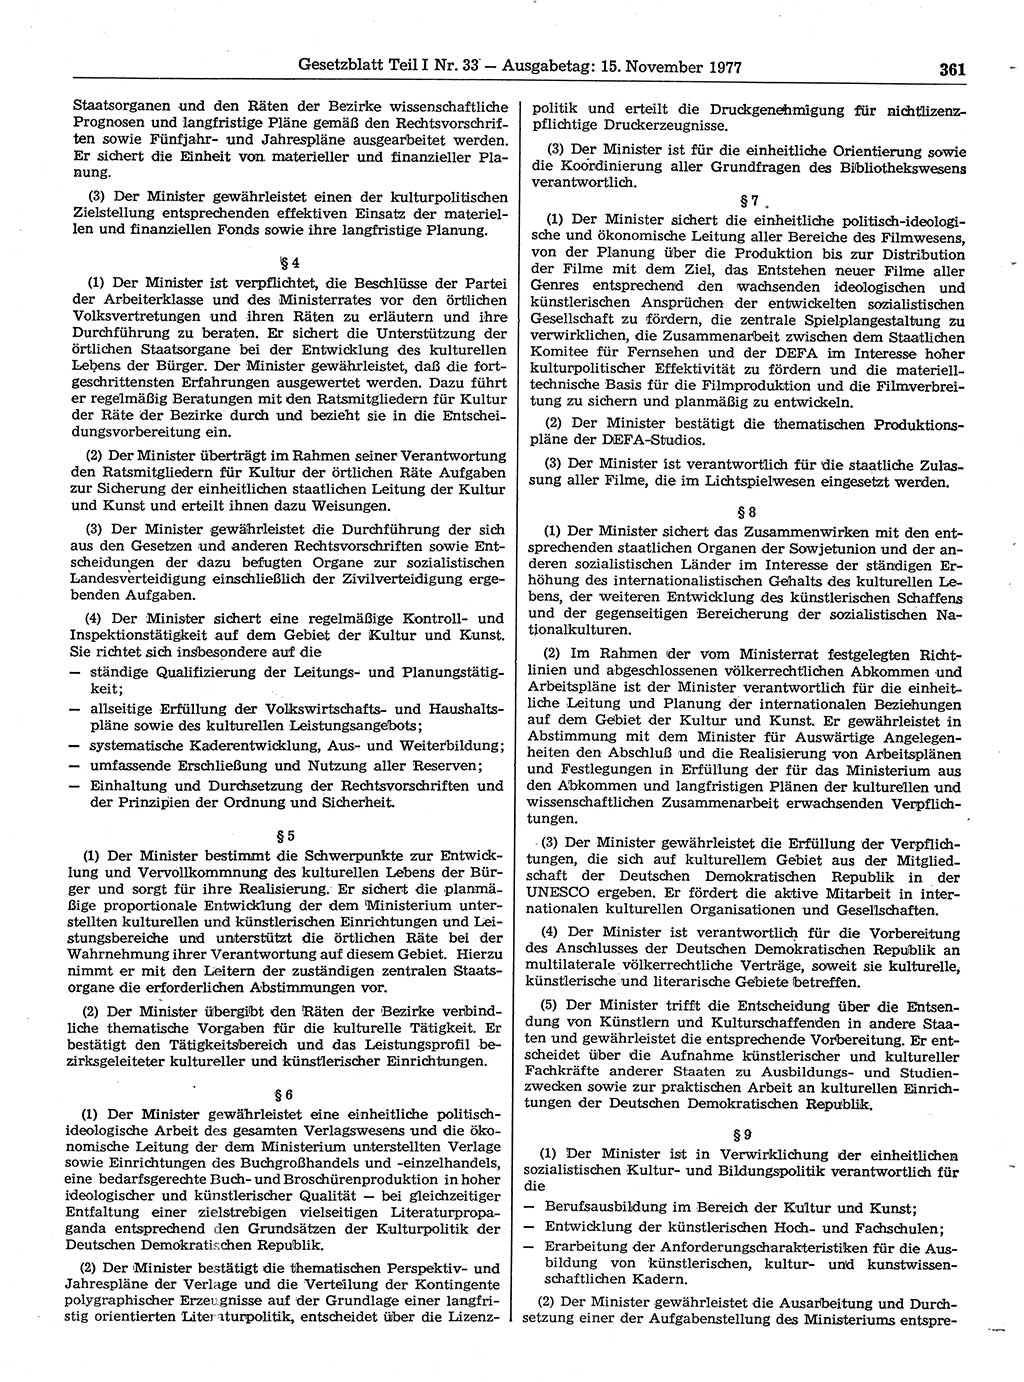 Gesetzblatt (GBl.) der Deutschen Demokratischen Republik (DDR) Teil Ⅰ 1977, Seite 361 (GBl. DDR Ⅰ 1977, S. 361)